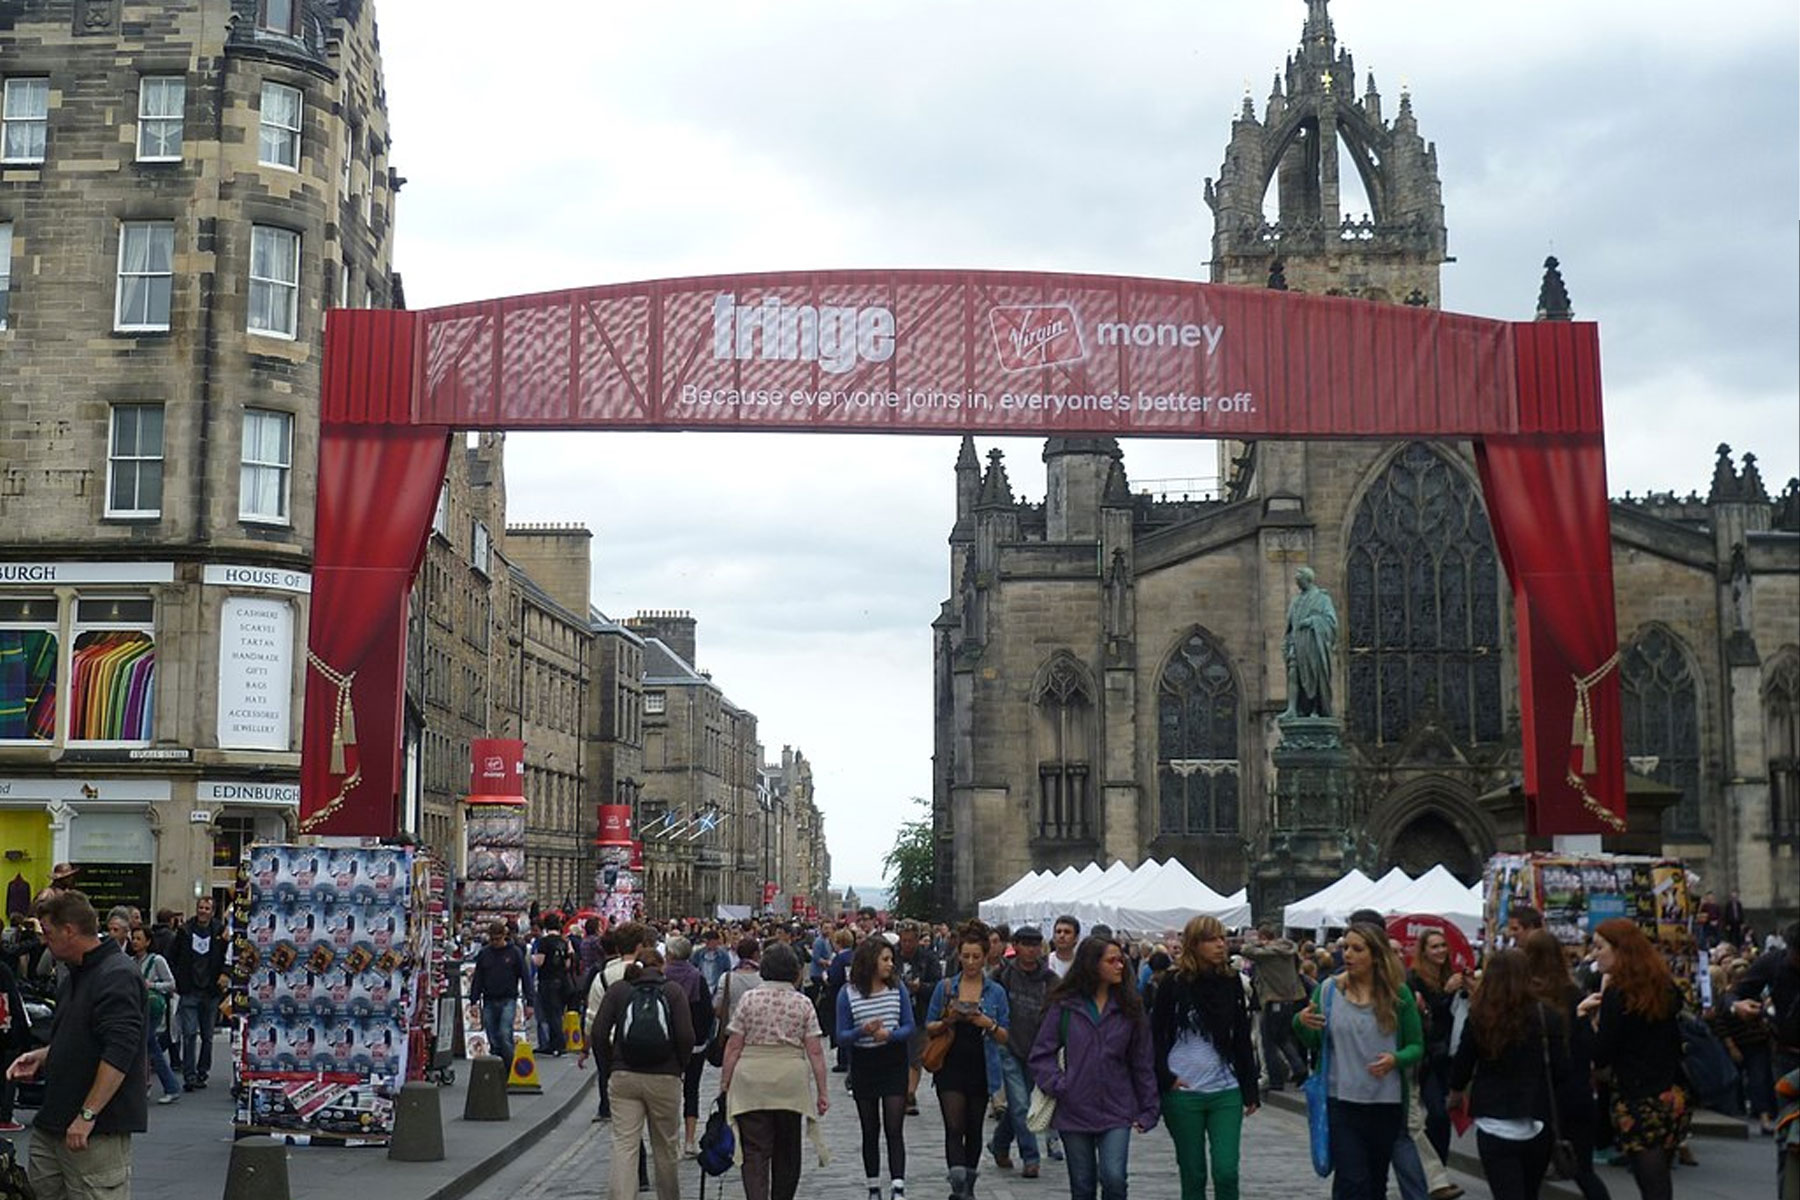 The streets of Edinburgh during the Fringe Festival